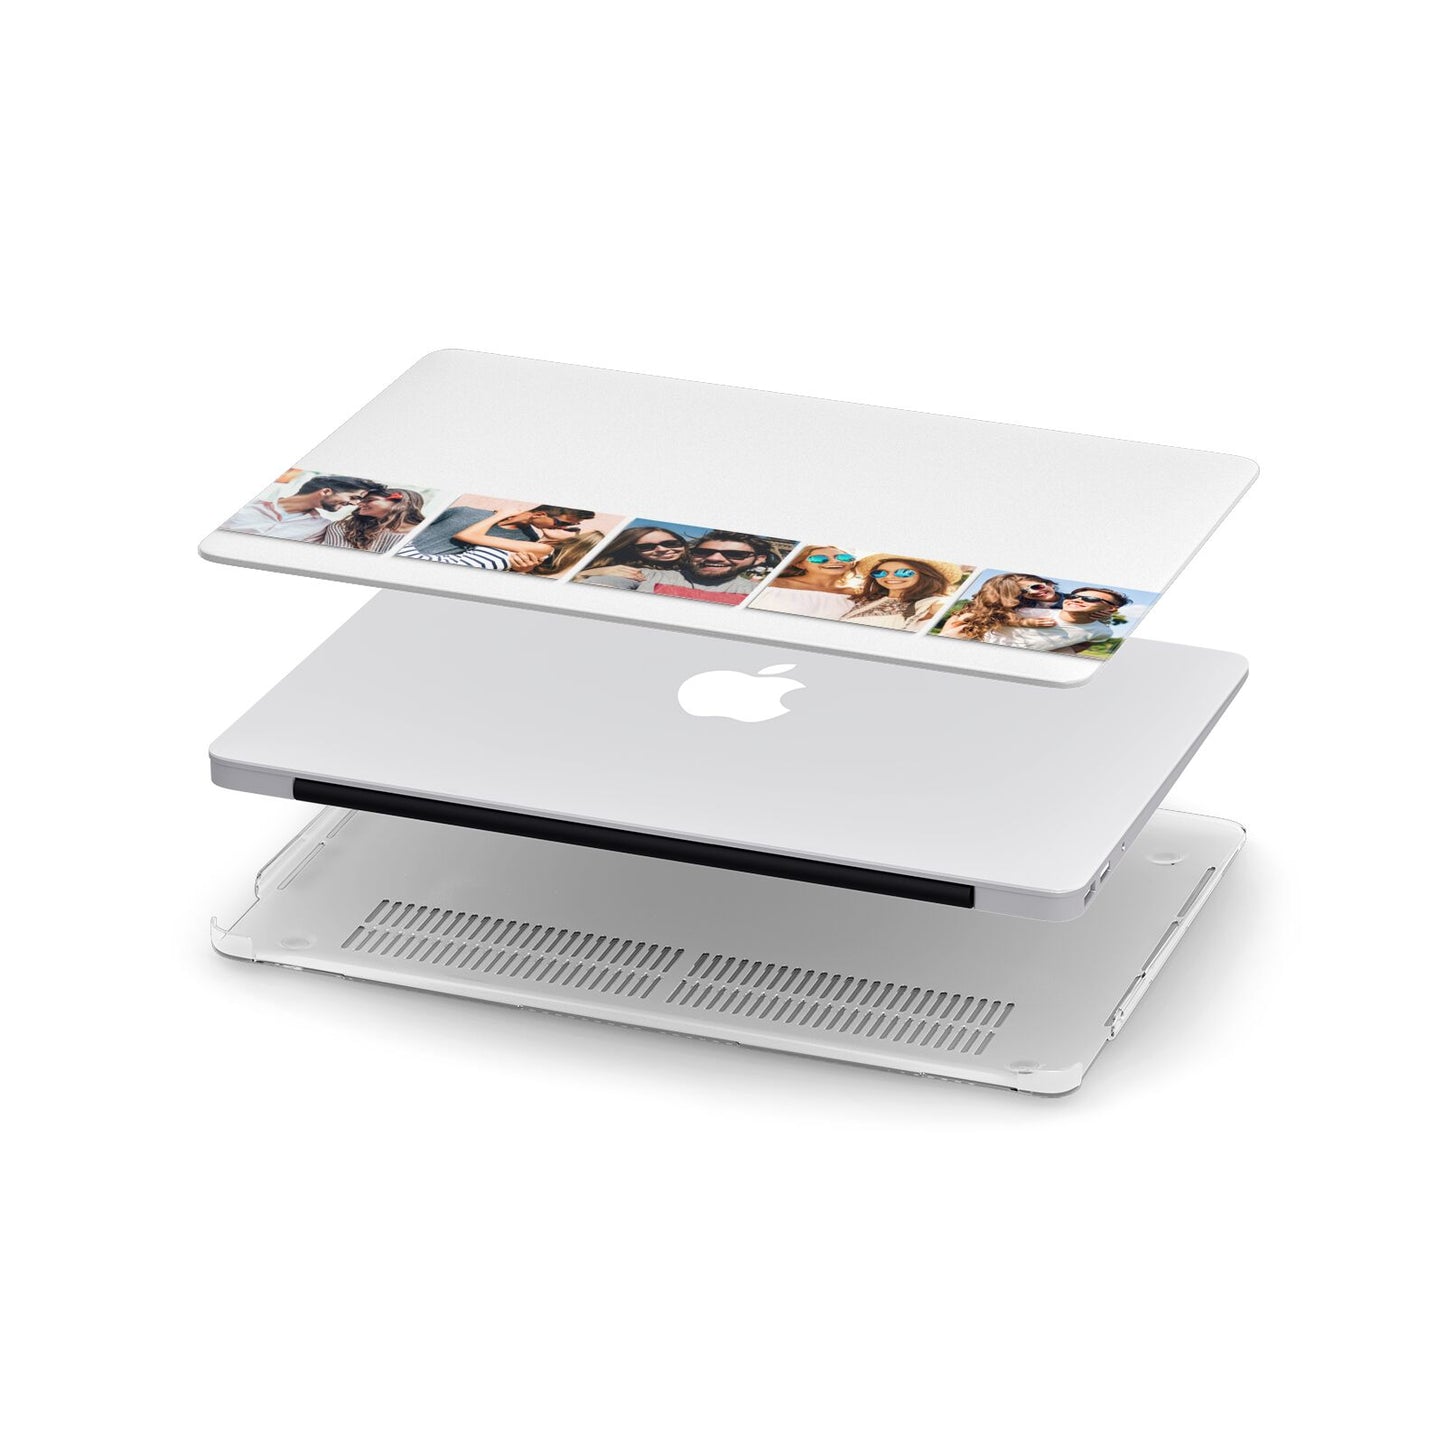 Photo Strip Montage Upload Apple MacBook Case in Detail